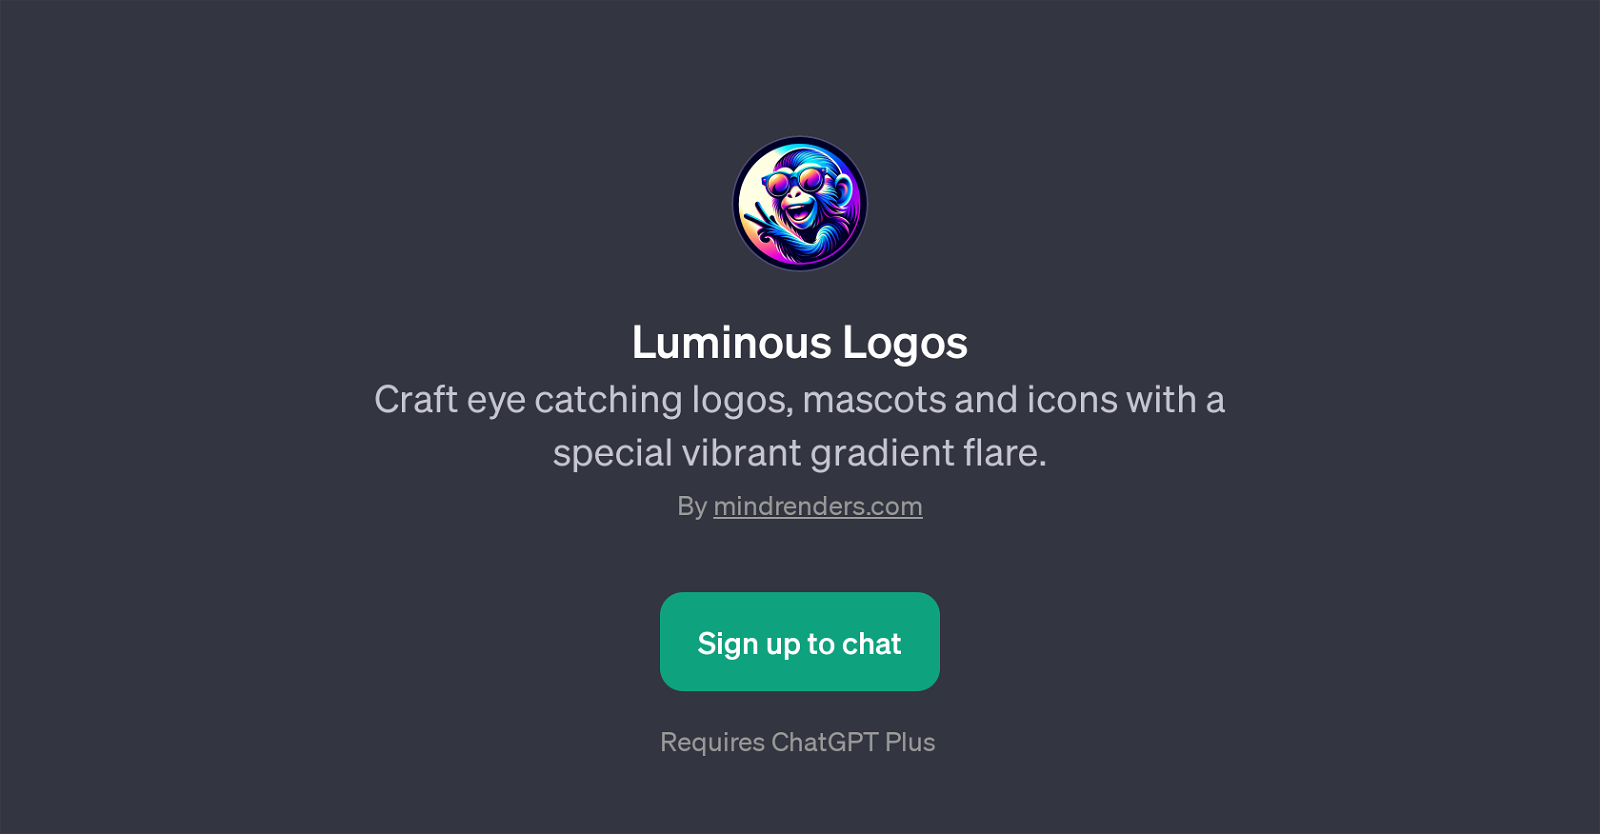 Luminous Logos website